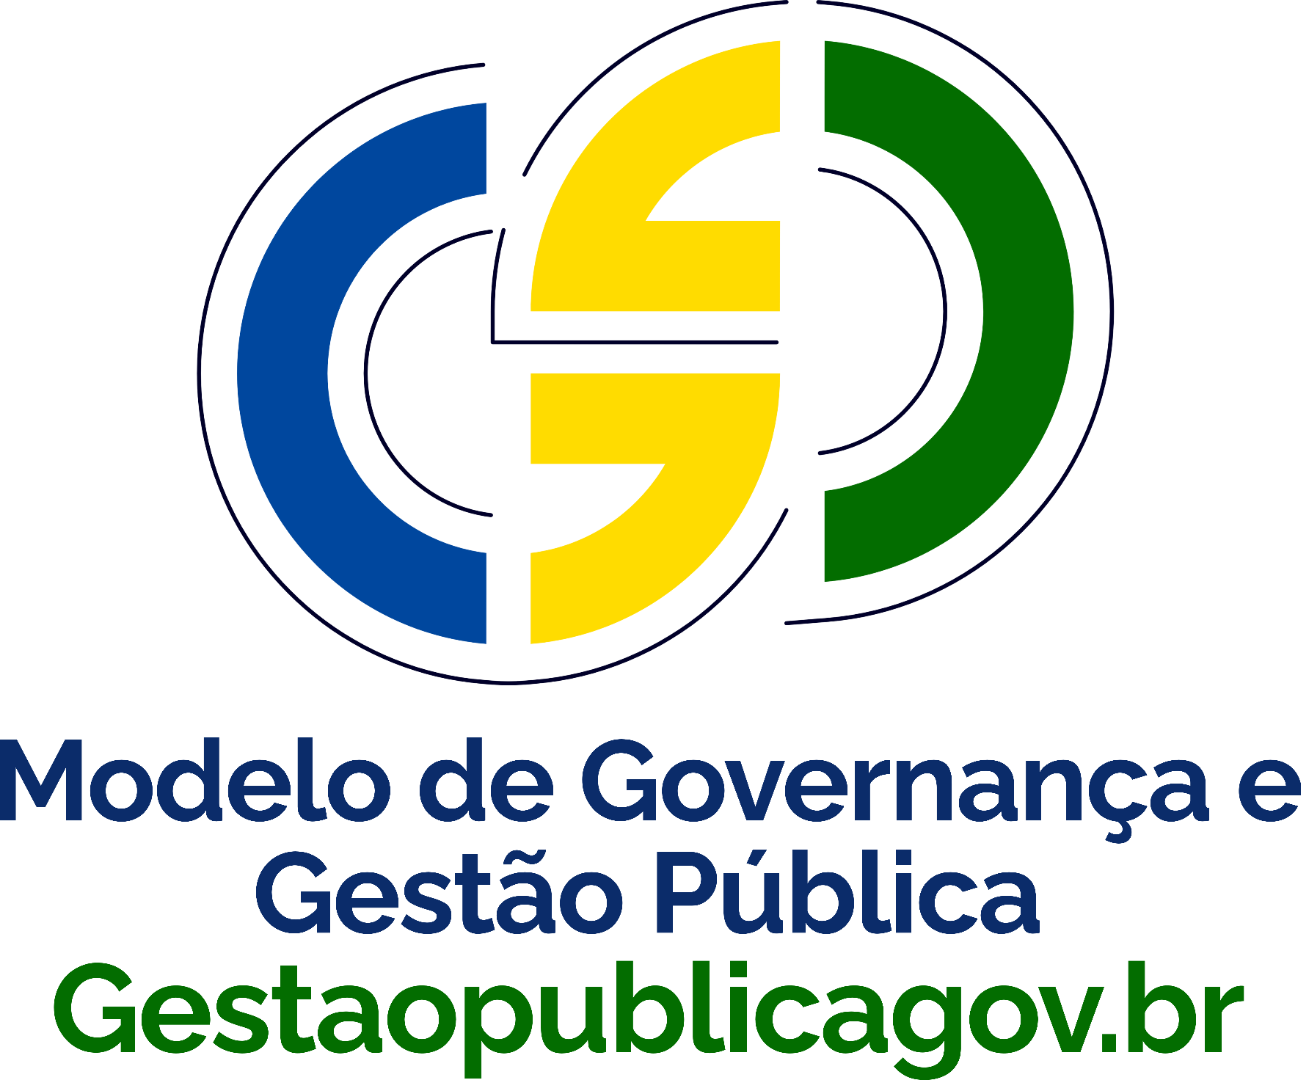 Logomarca Modelo Gestaopublicagov.br HD completo.png